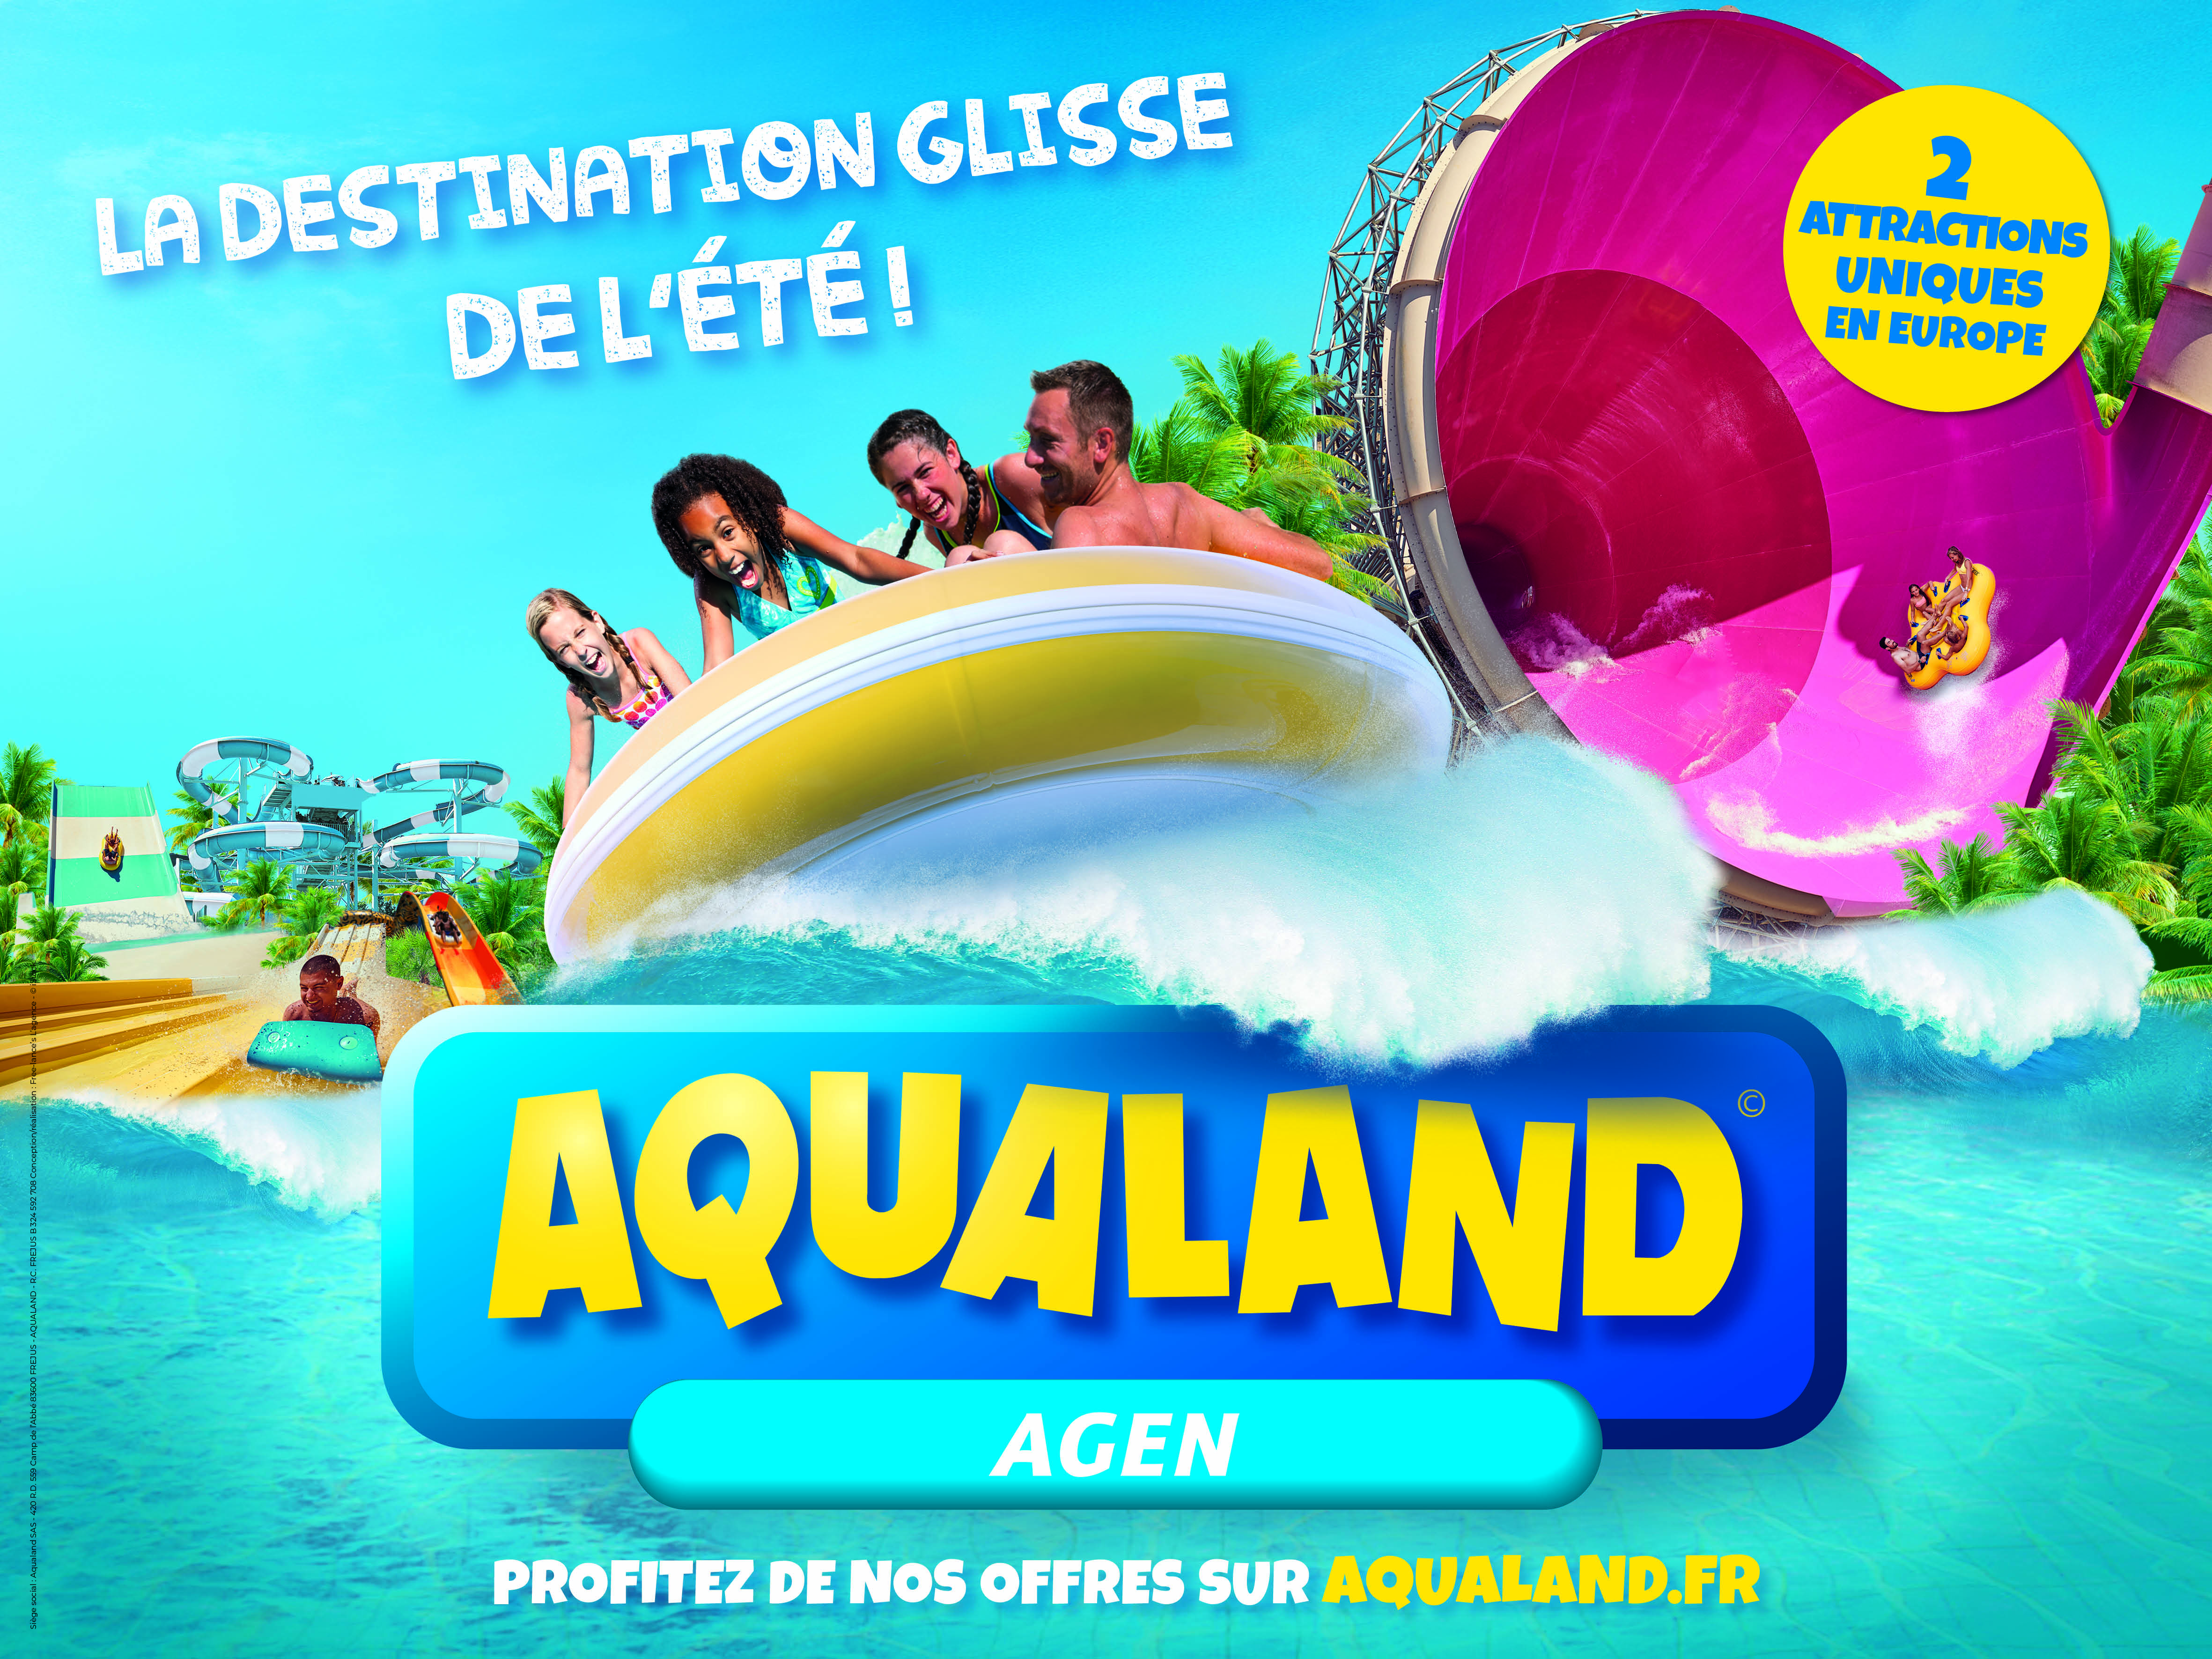 Aqualand Agen : un parc pour tous !